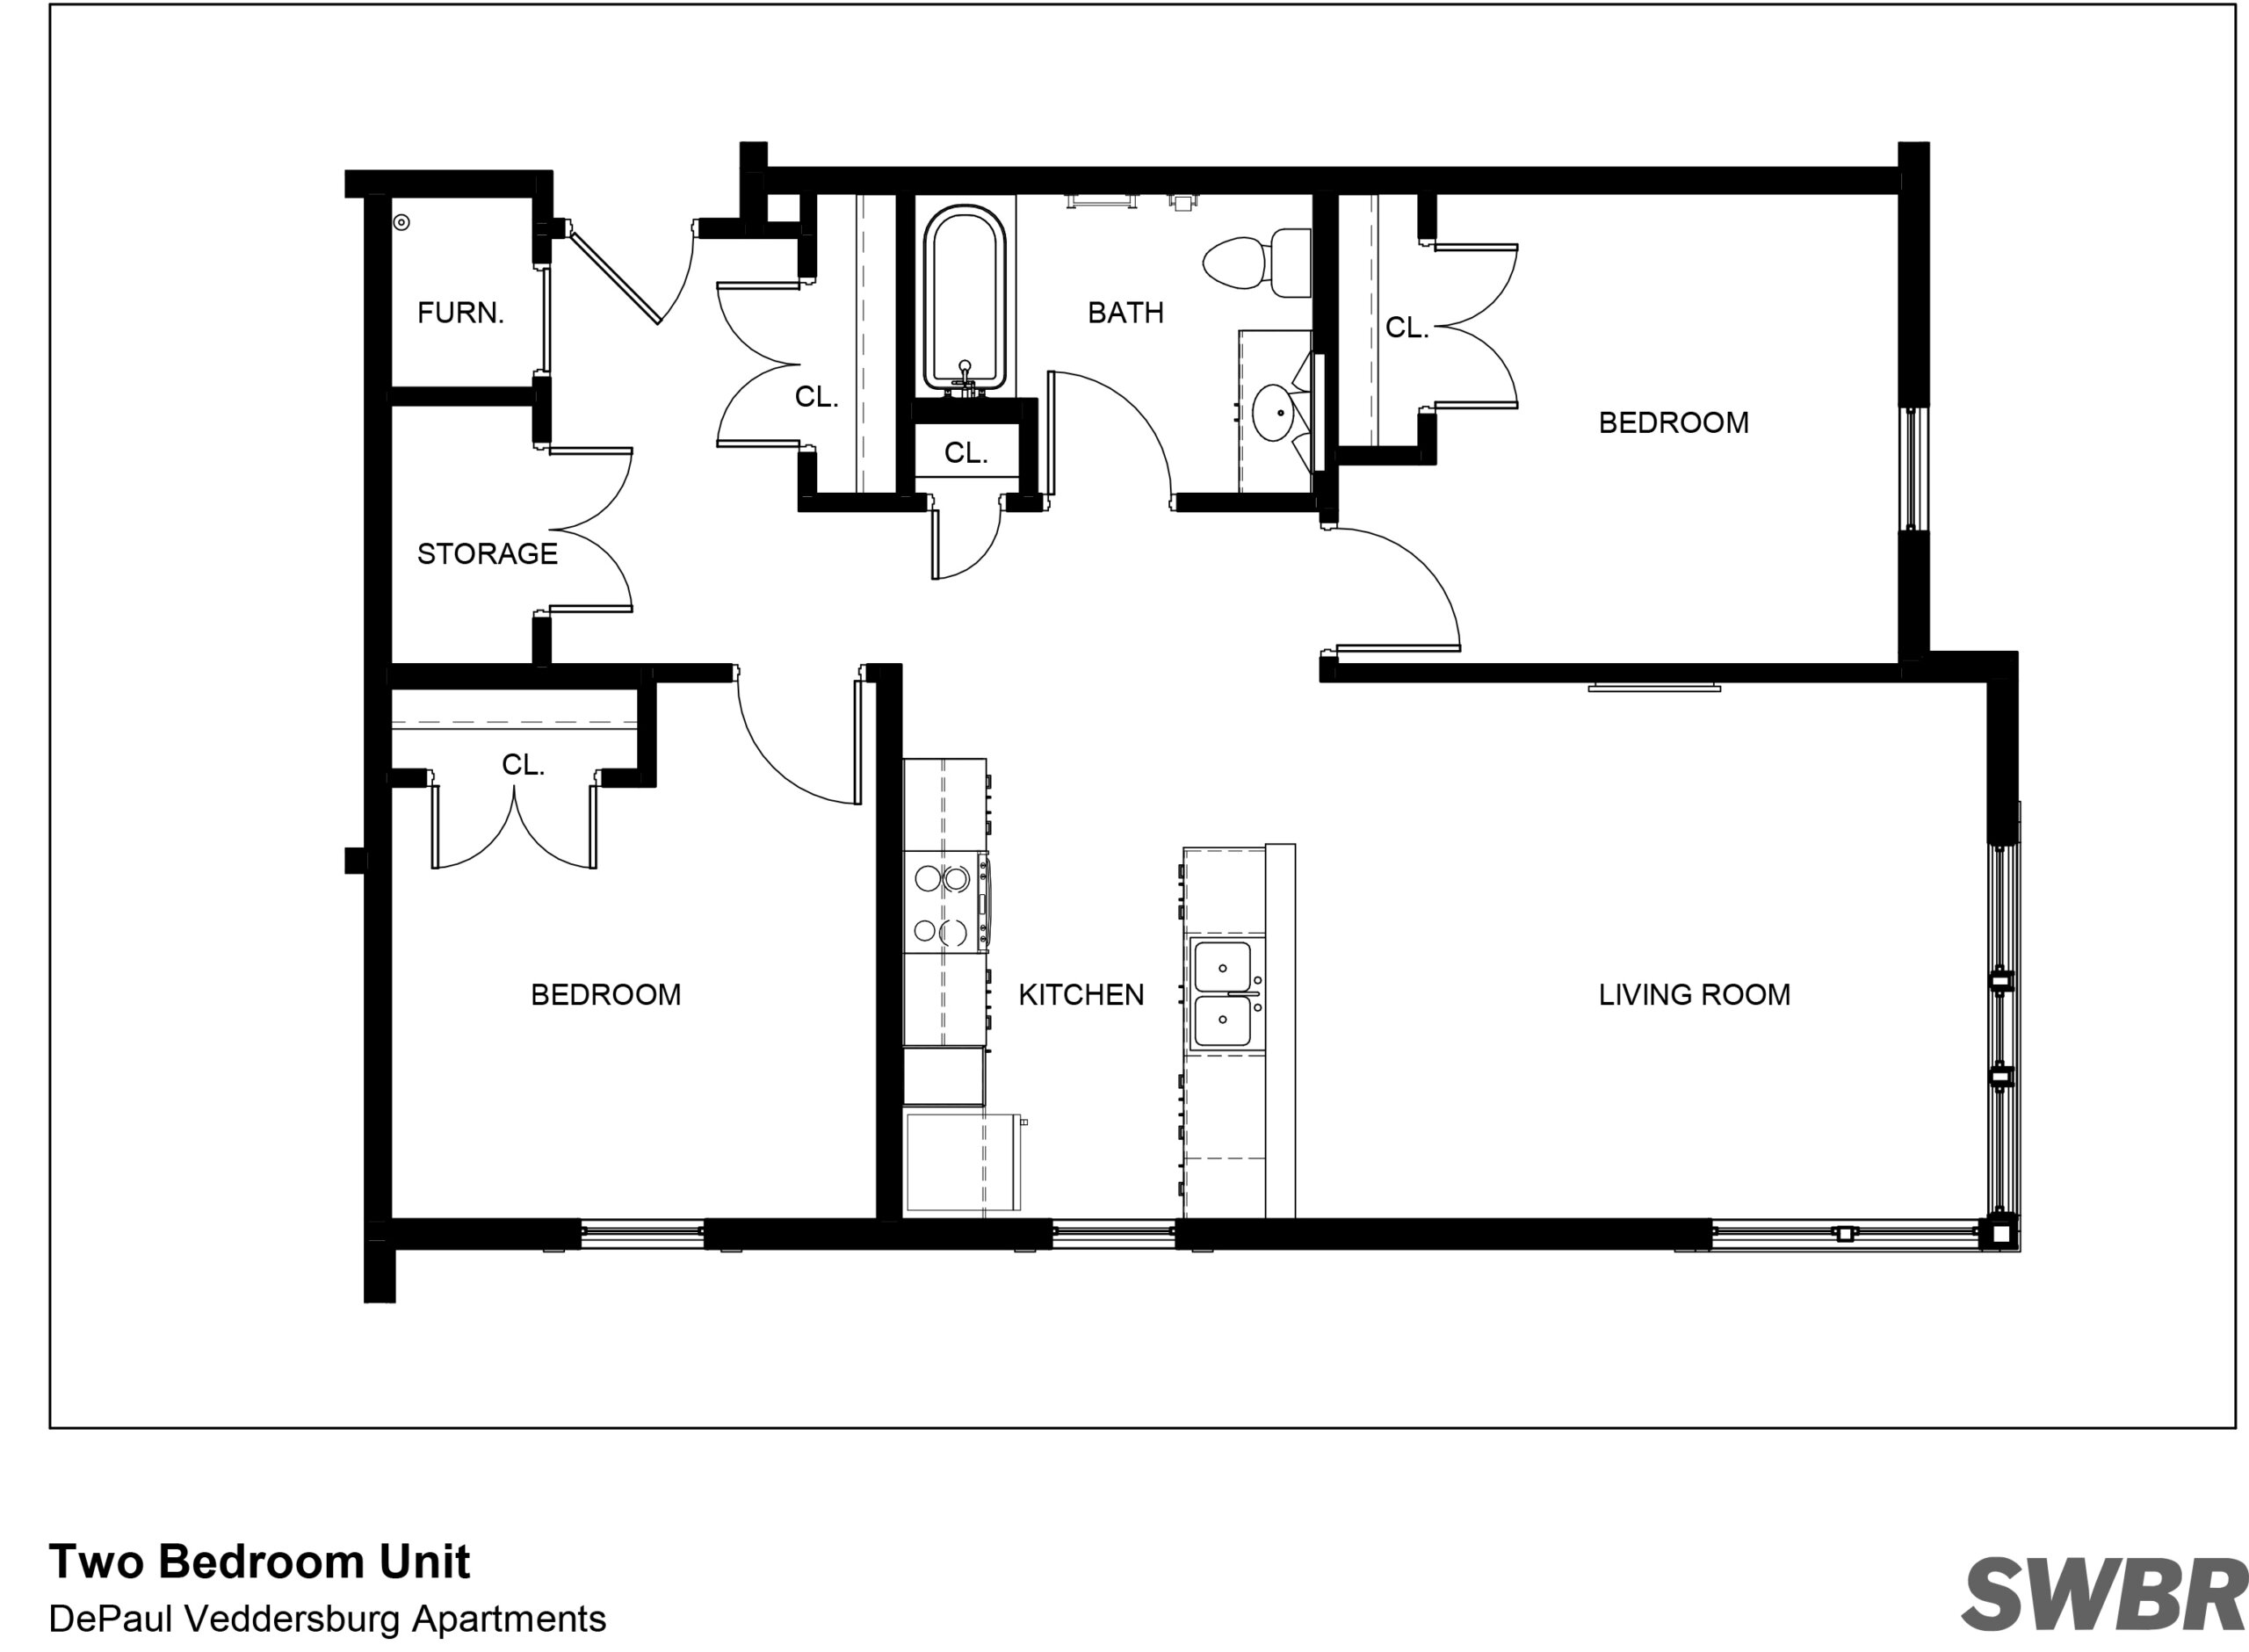 Veddersburg Apartments Two Bedroom Floor Plan